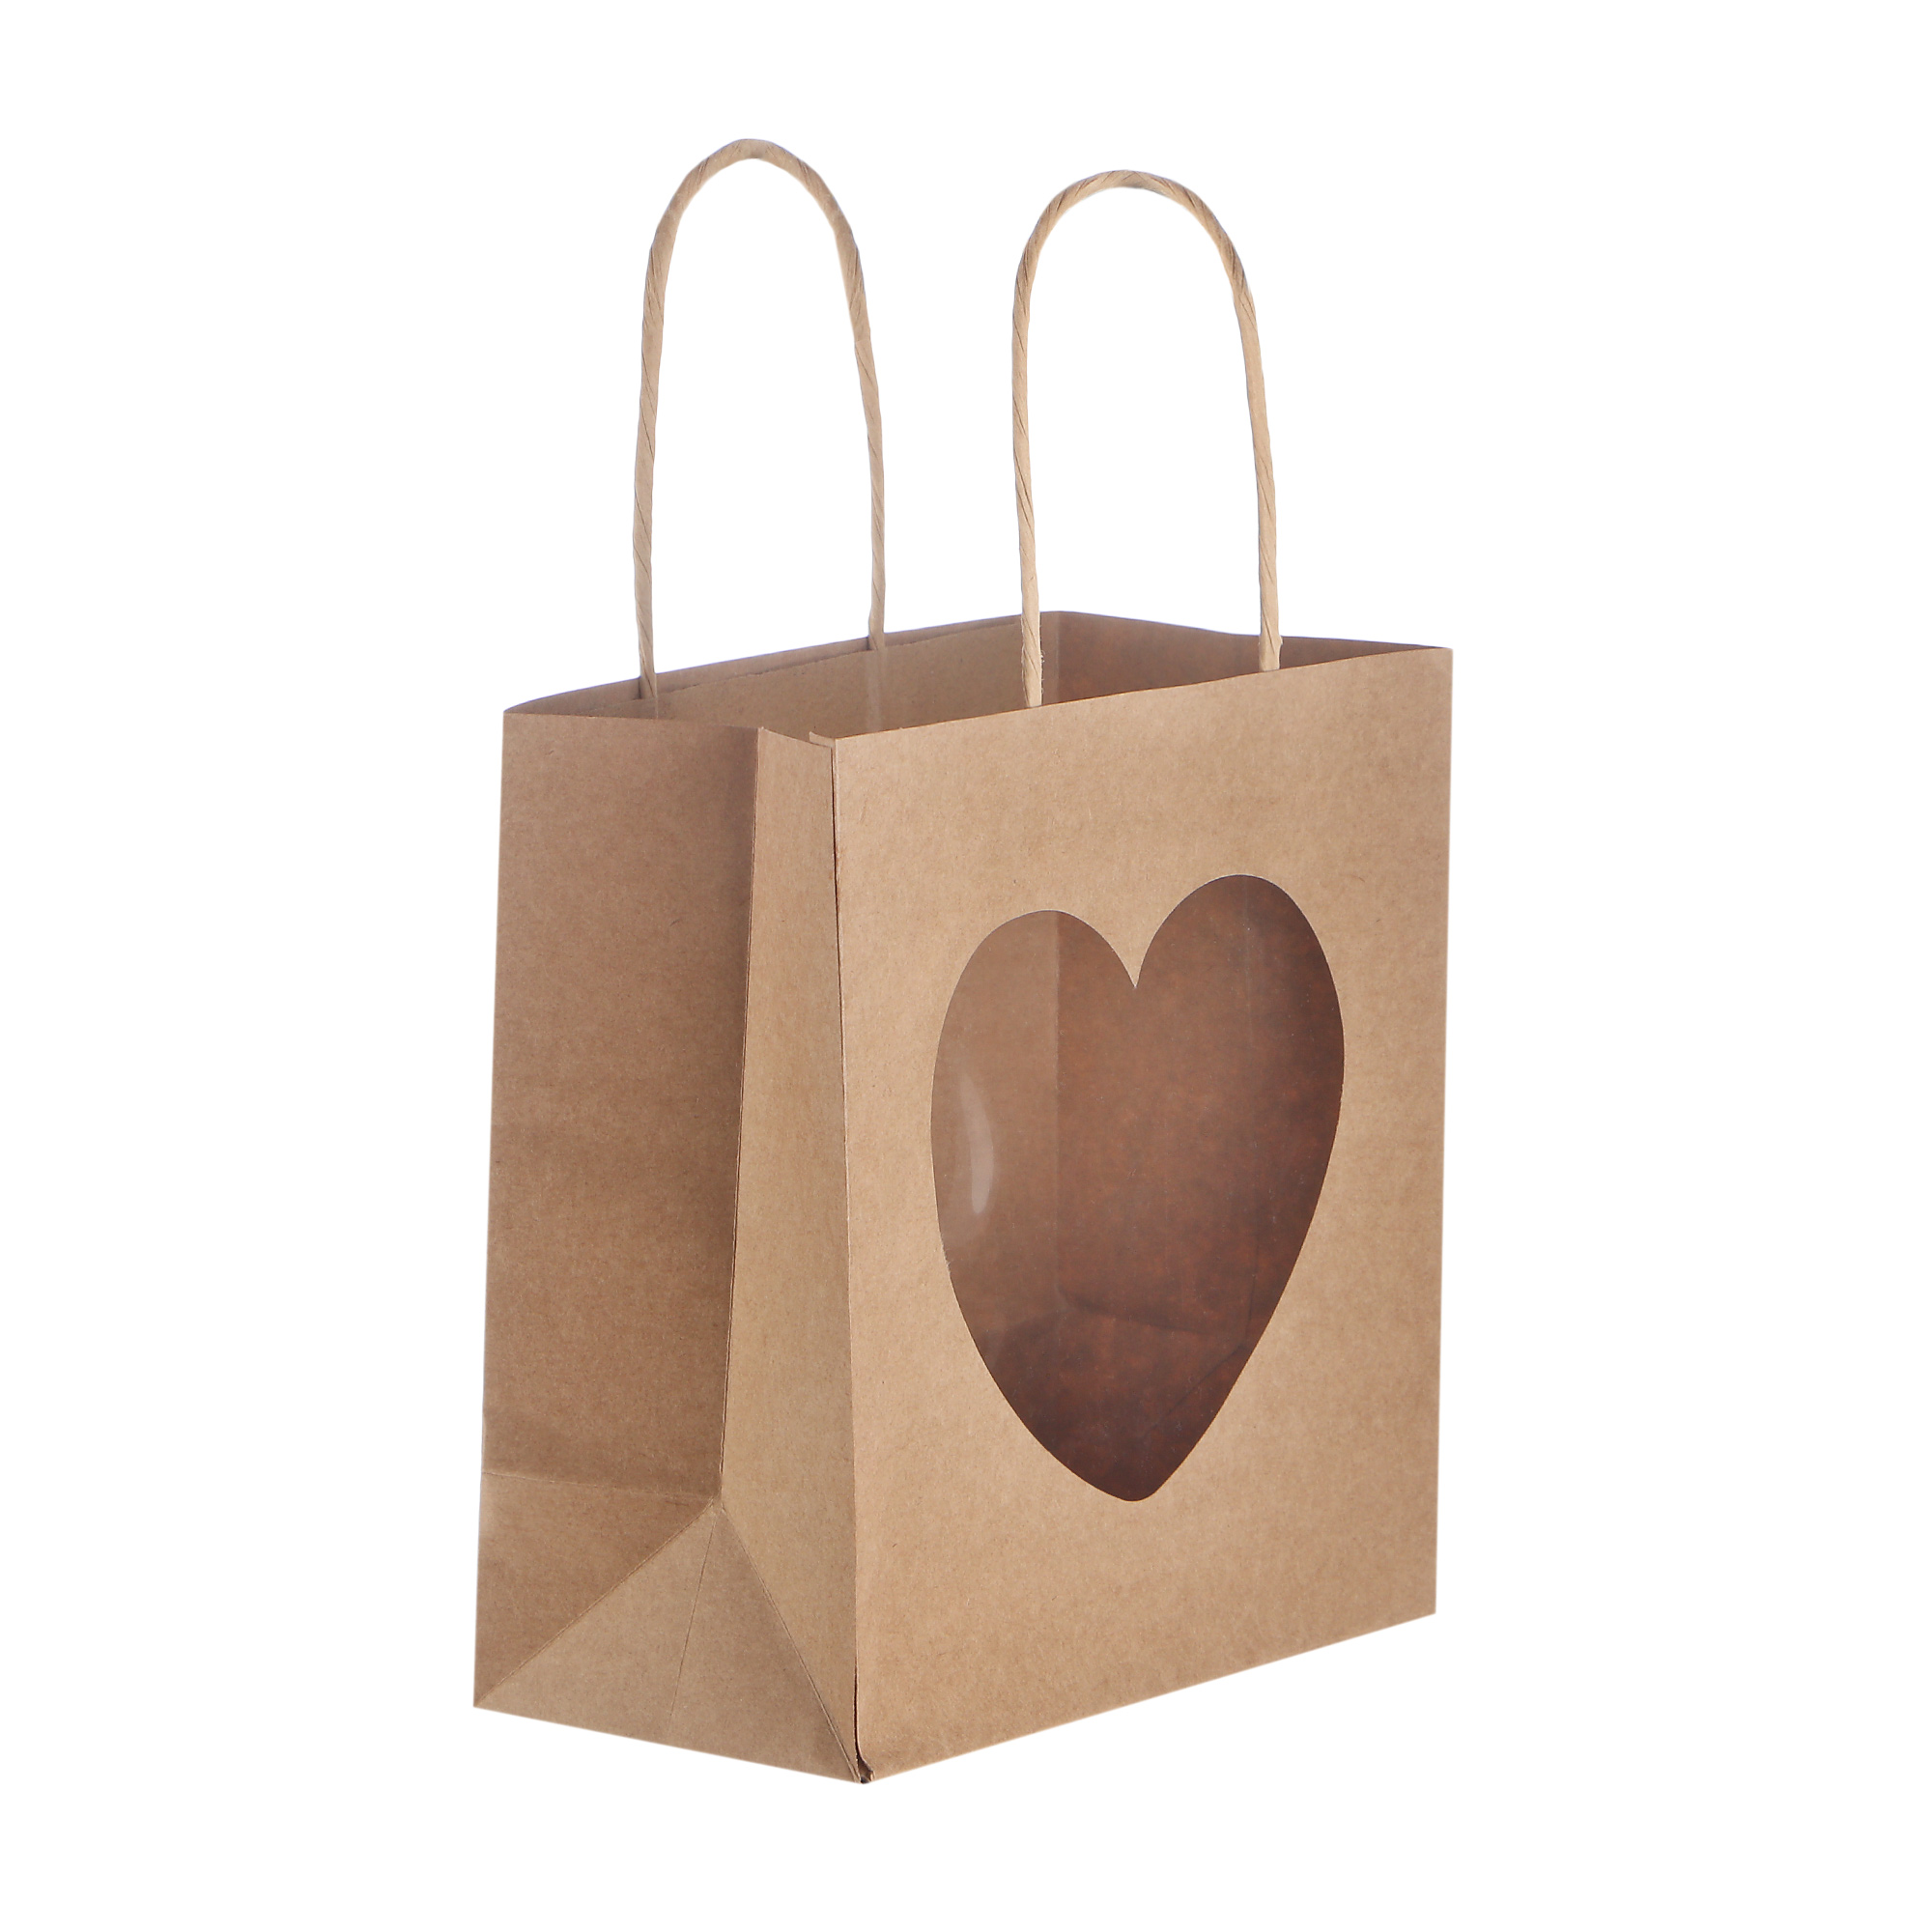 Пакет Dillewijin heart 19x10x20см коричневый